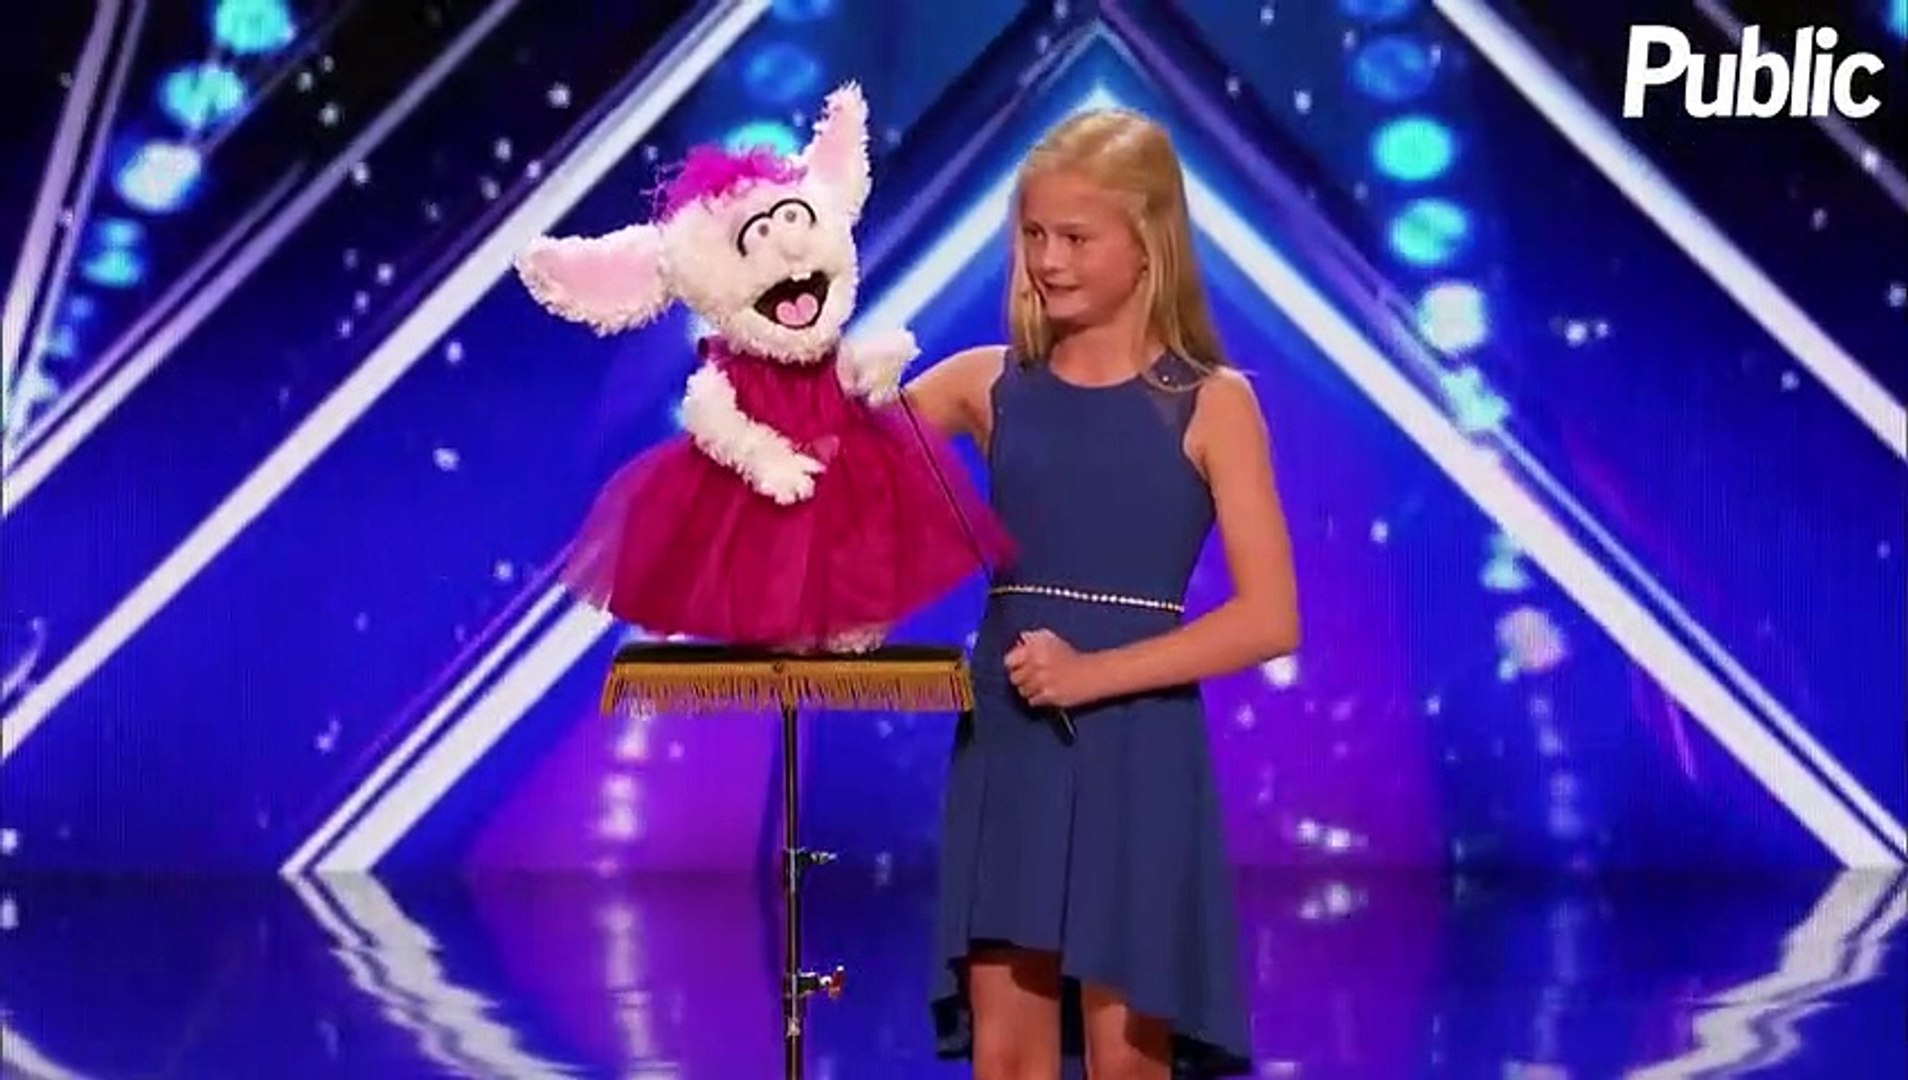 Vidéo : America's Got Talent : une enfant de 12 ans fait le buzz avec un  numéro de ventriloque ! - Vidéo Dailymotion